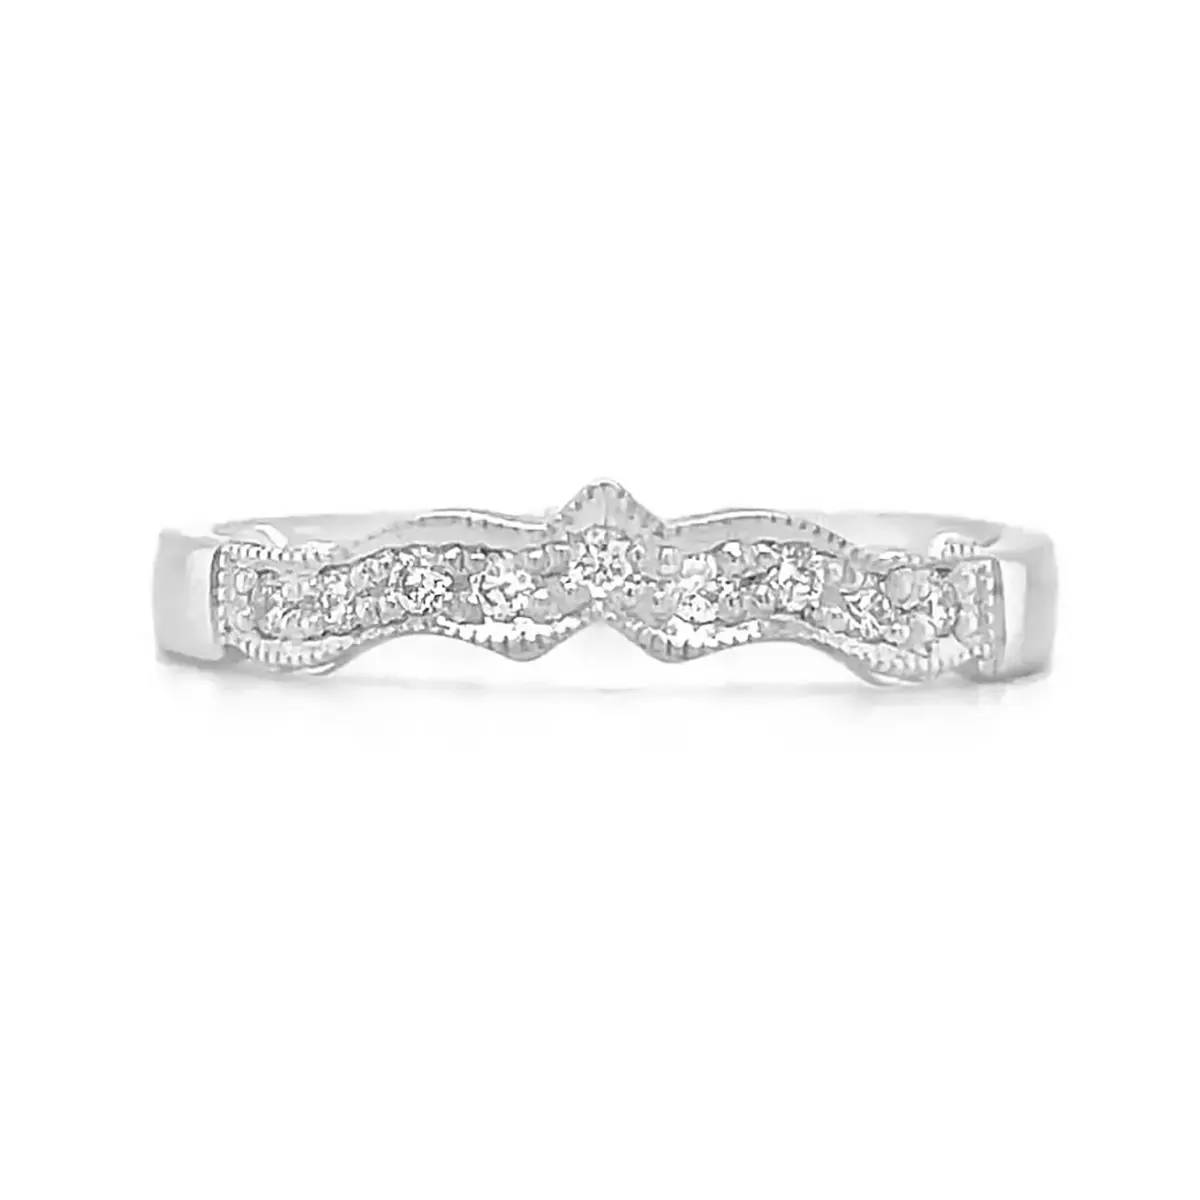 Claddagh Wedding Ring Encrusted with Brilliant Cut Diamonds